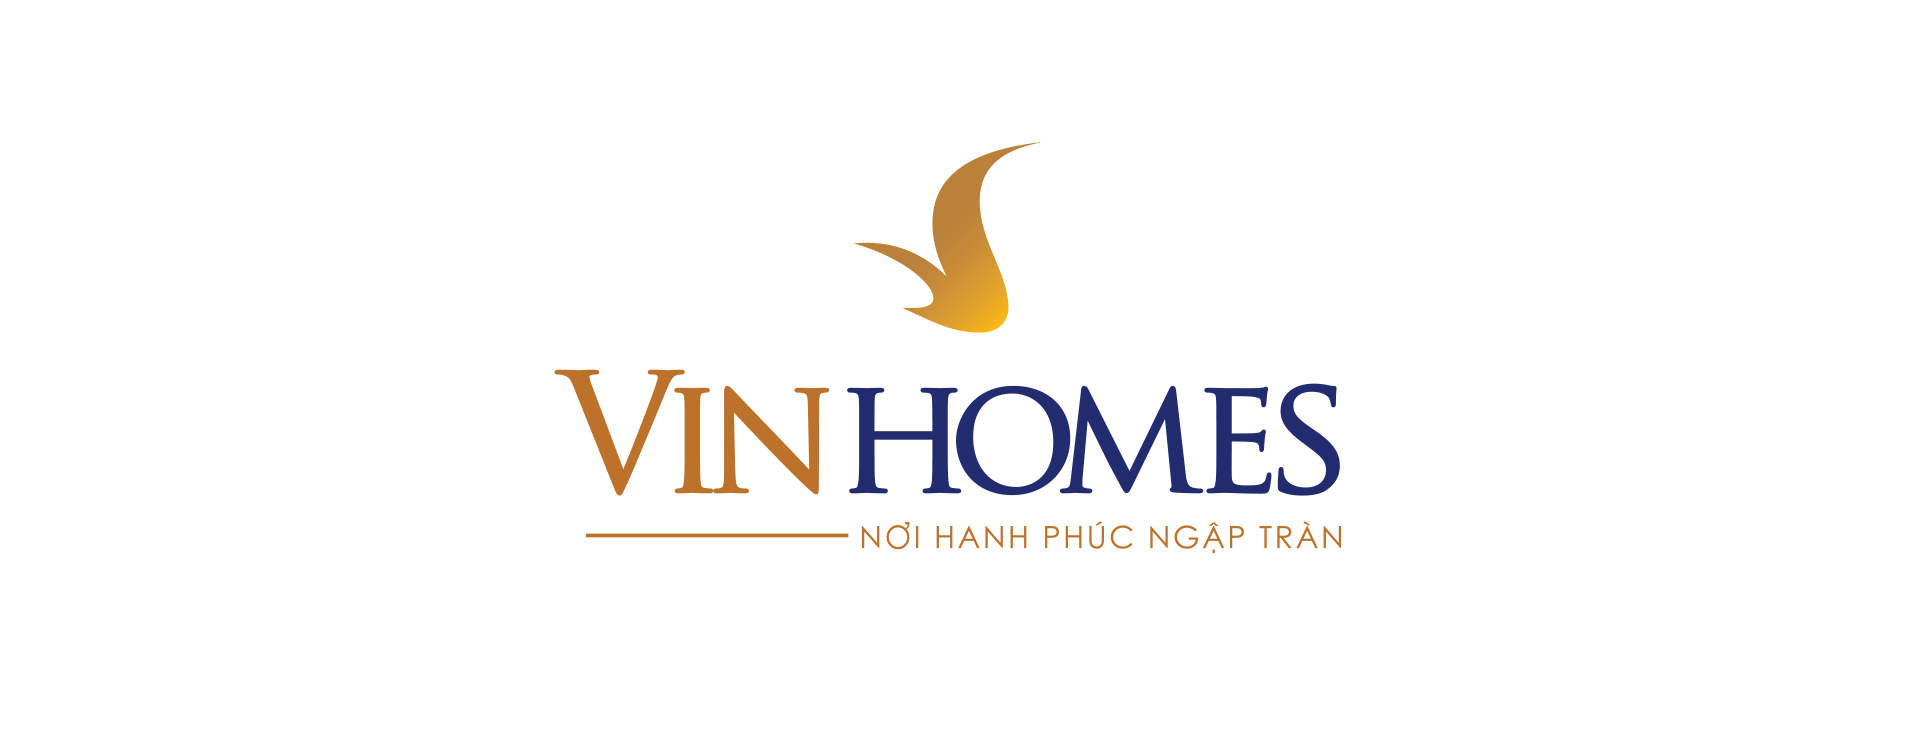 Vinhomes là chủ đầu tư uy tín số 1 thị trường bất động sản